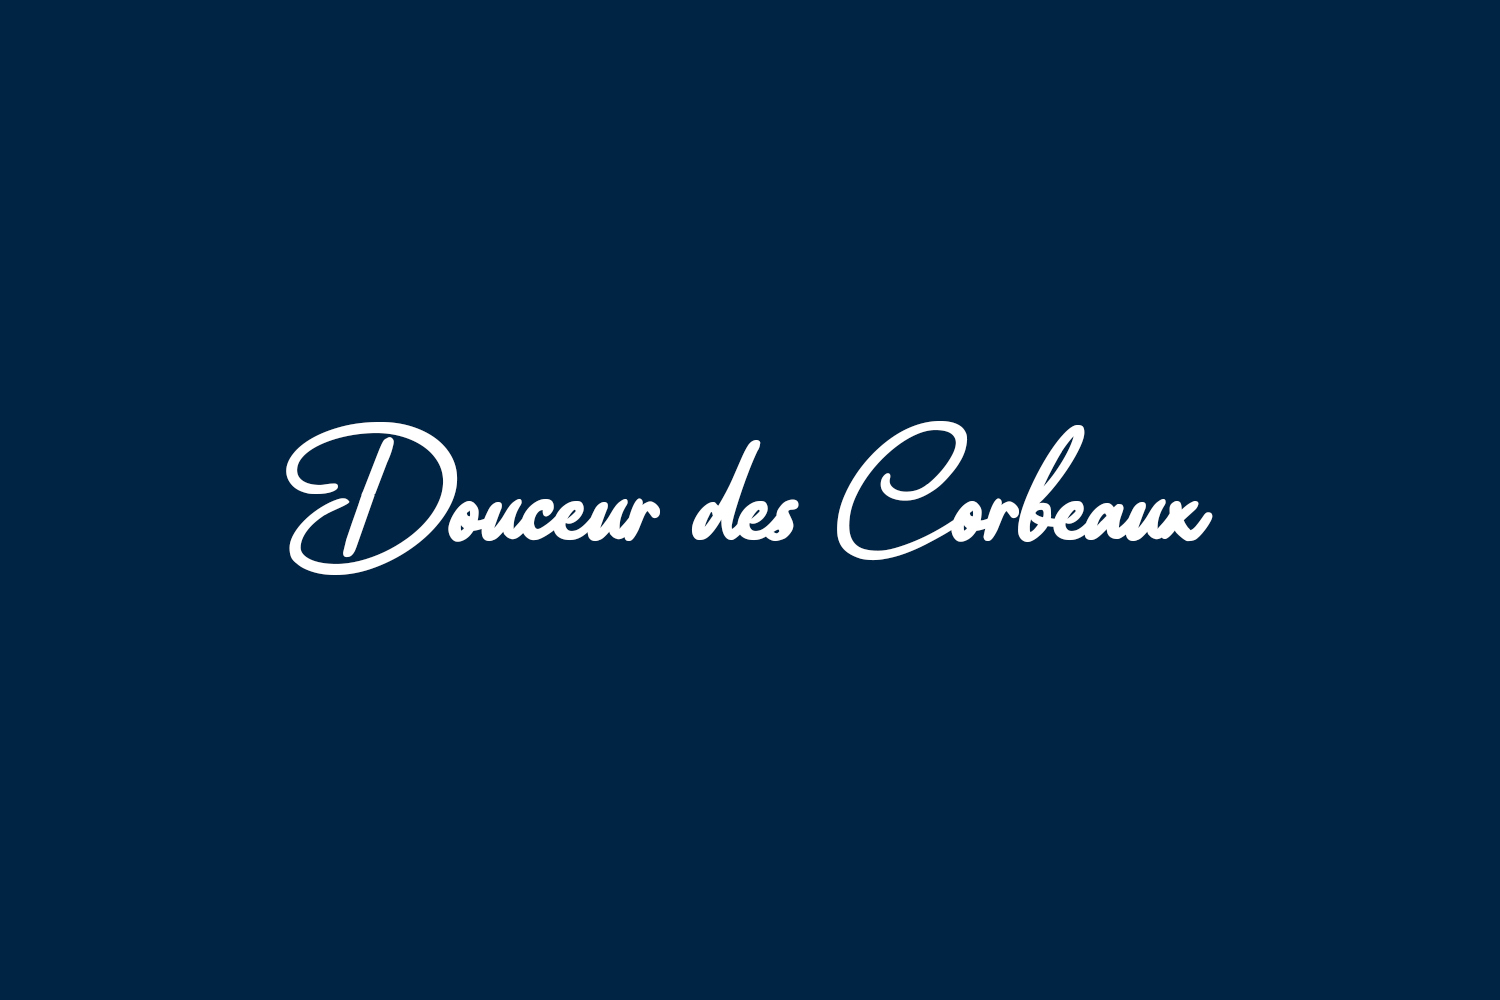 Douceur des Corbeaux Free Font